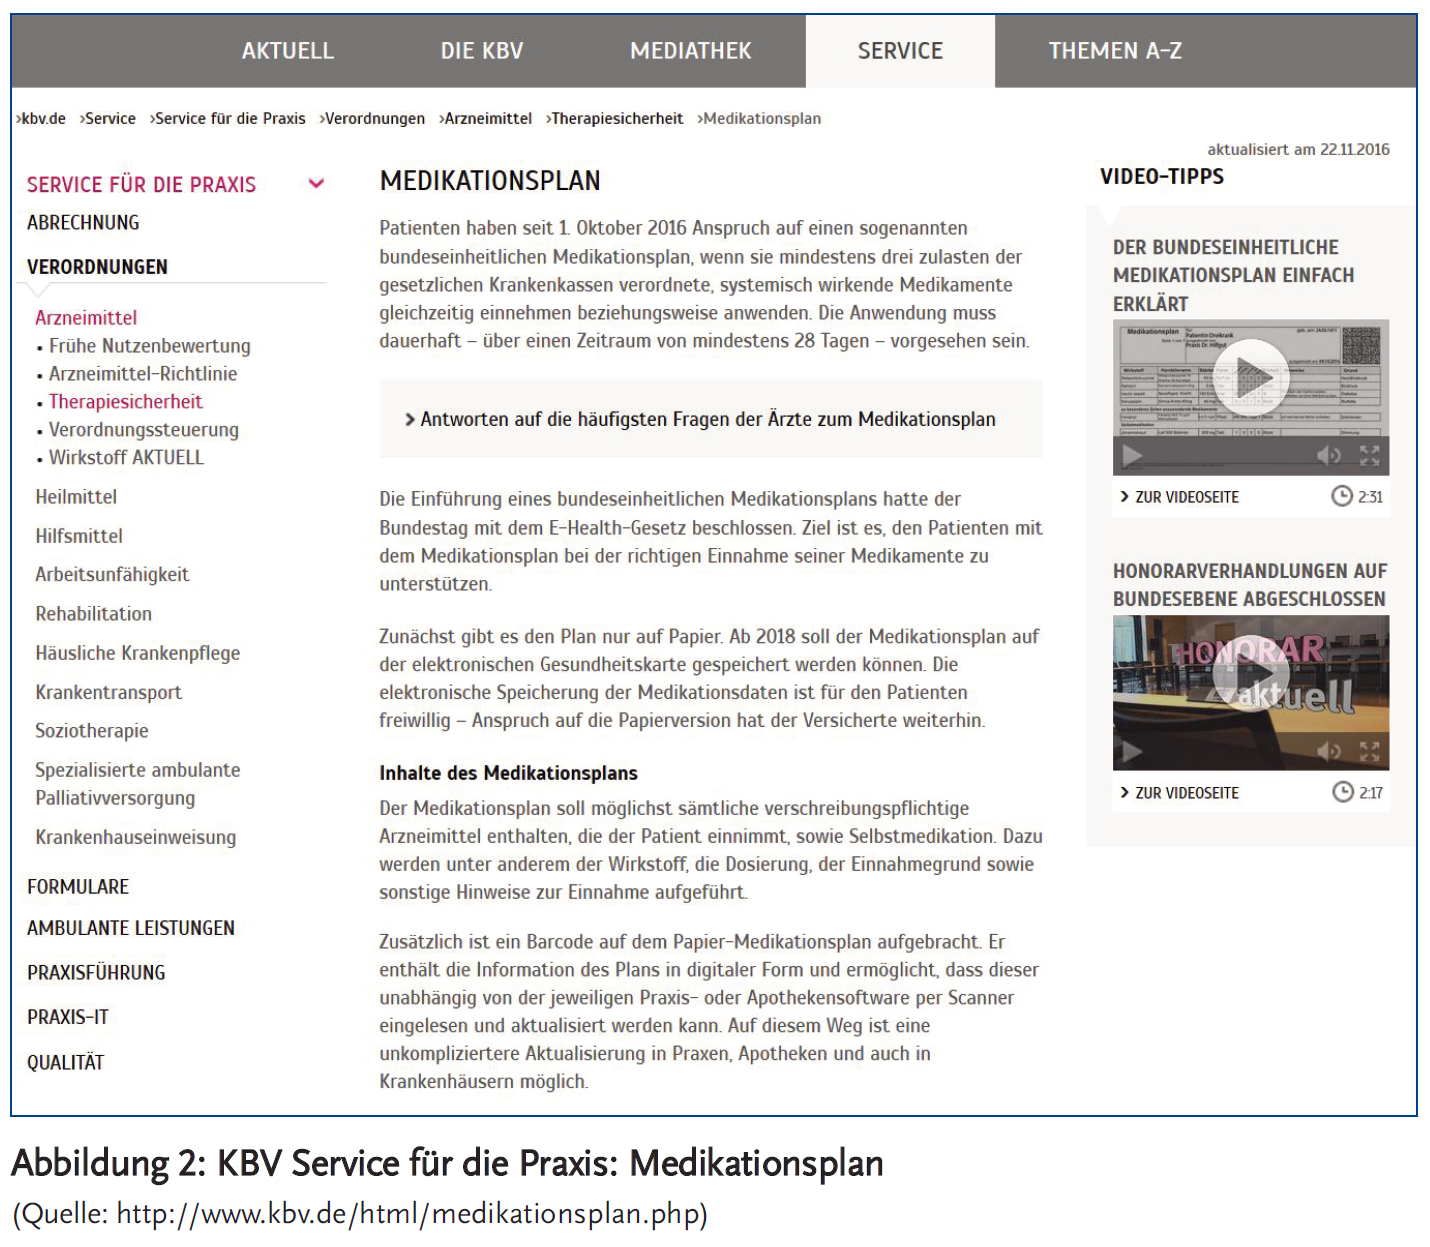 Abbildung 2: KBV Service für die Praxis: Medikationsplan